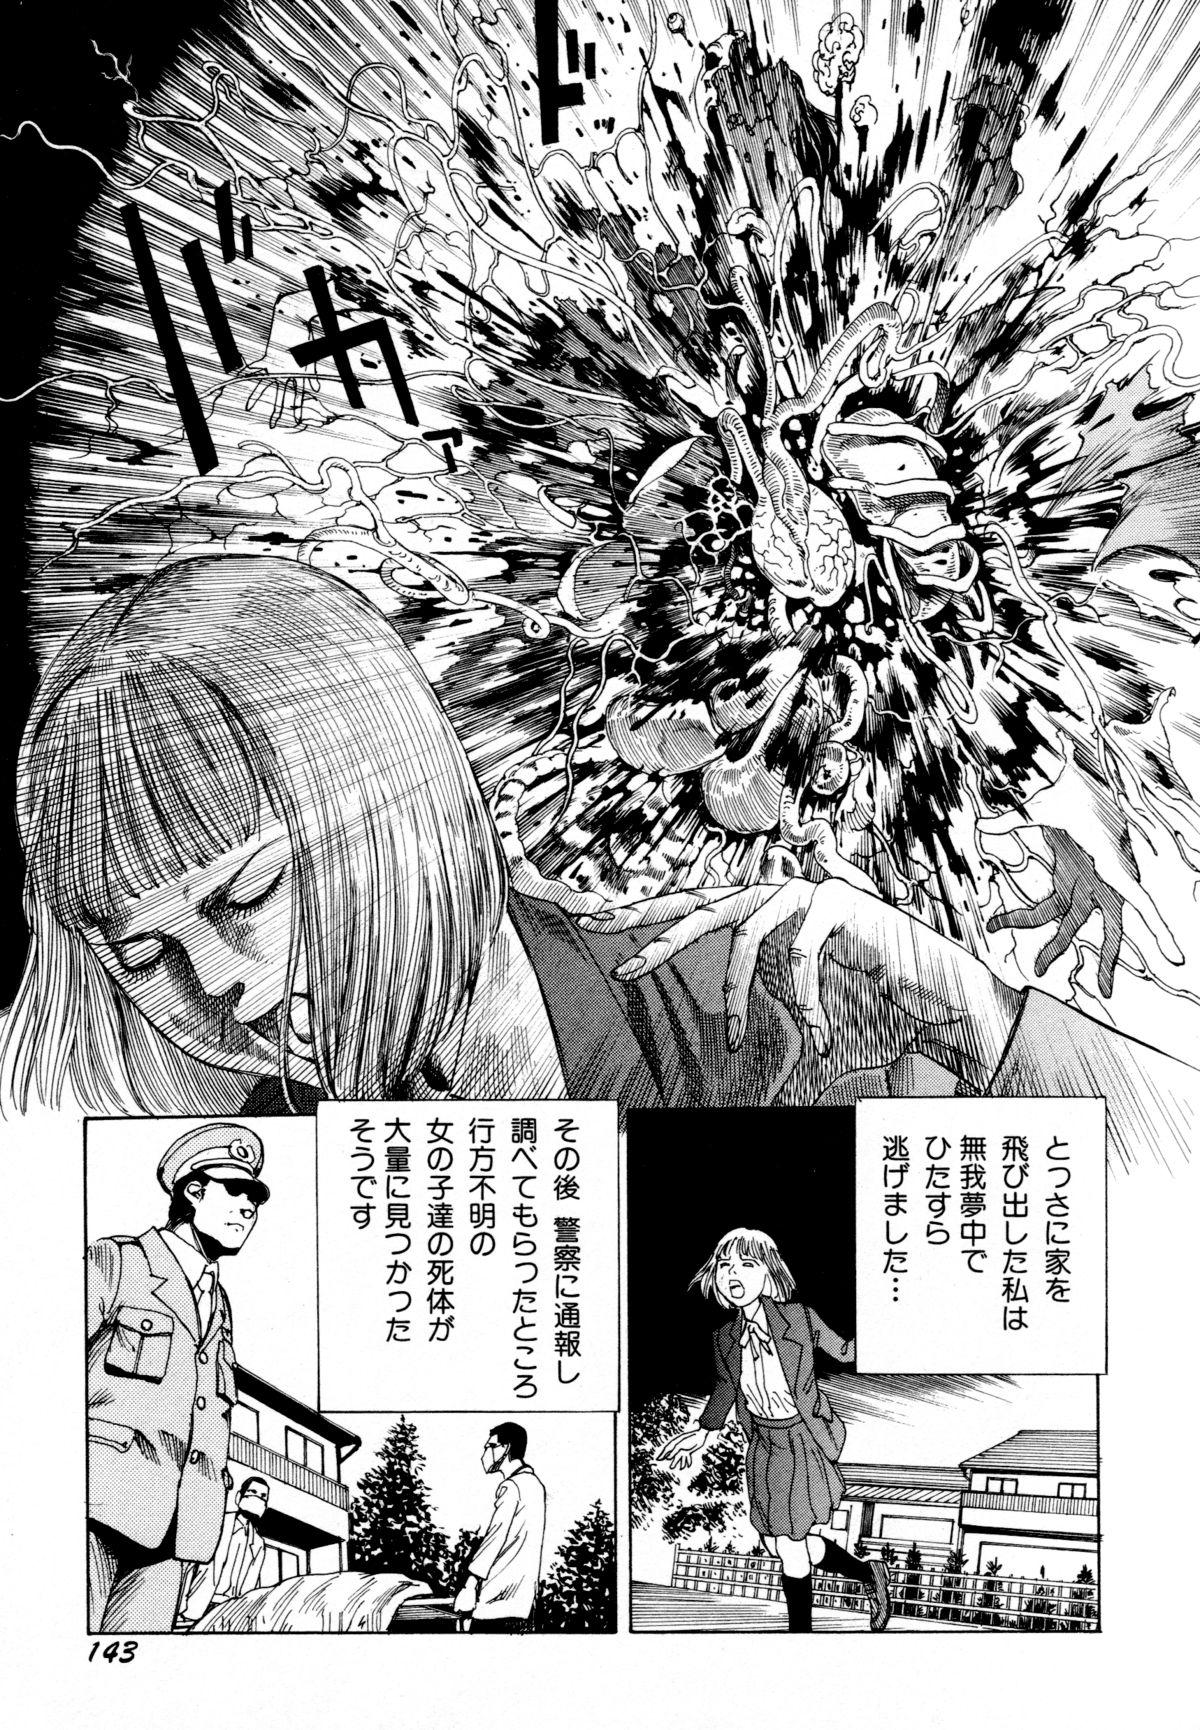 Arijigoku vs Barabara Shoujo - Antlion vs BaraBara Girl 145